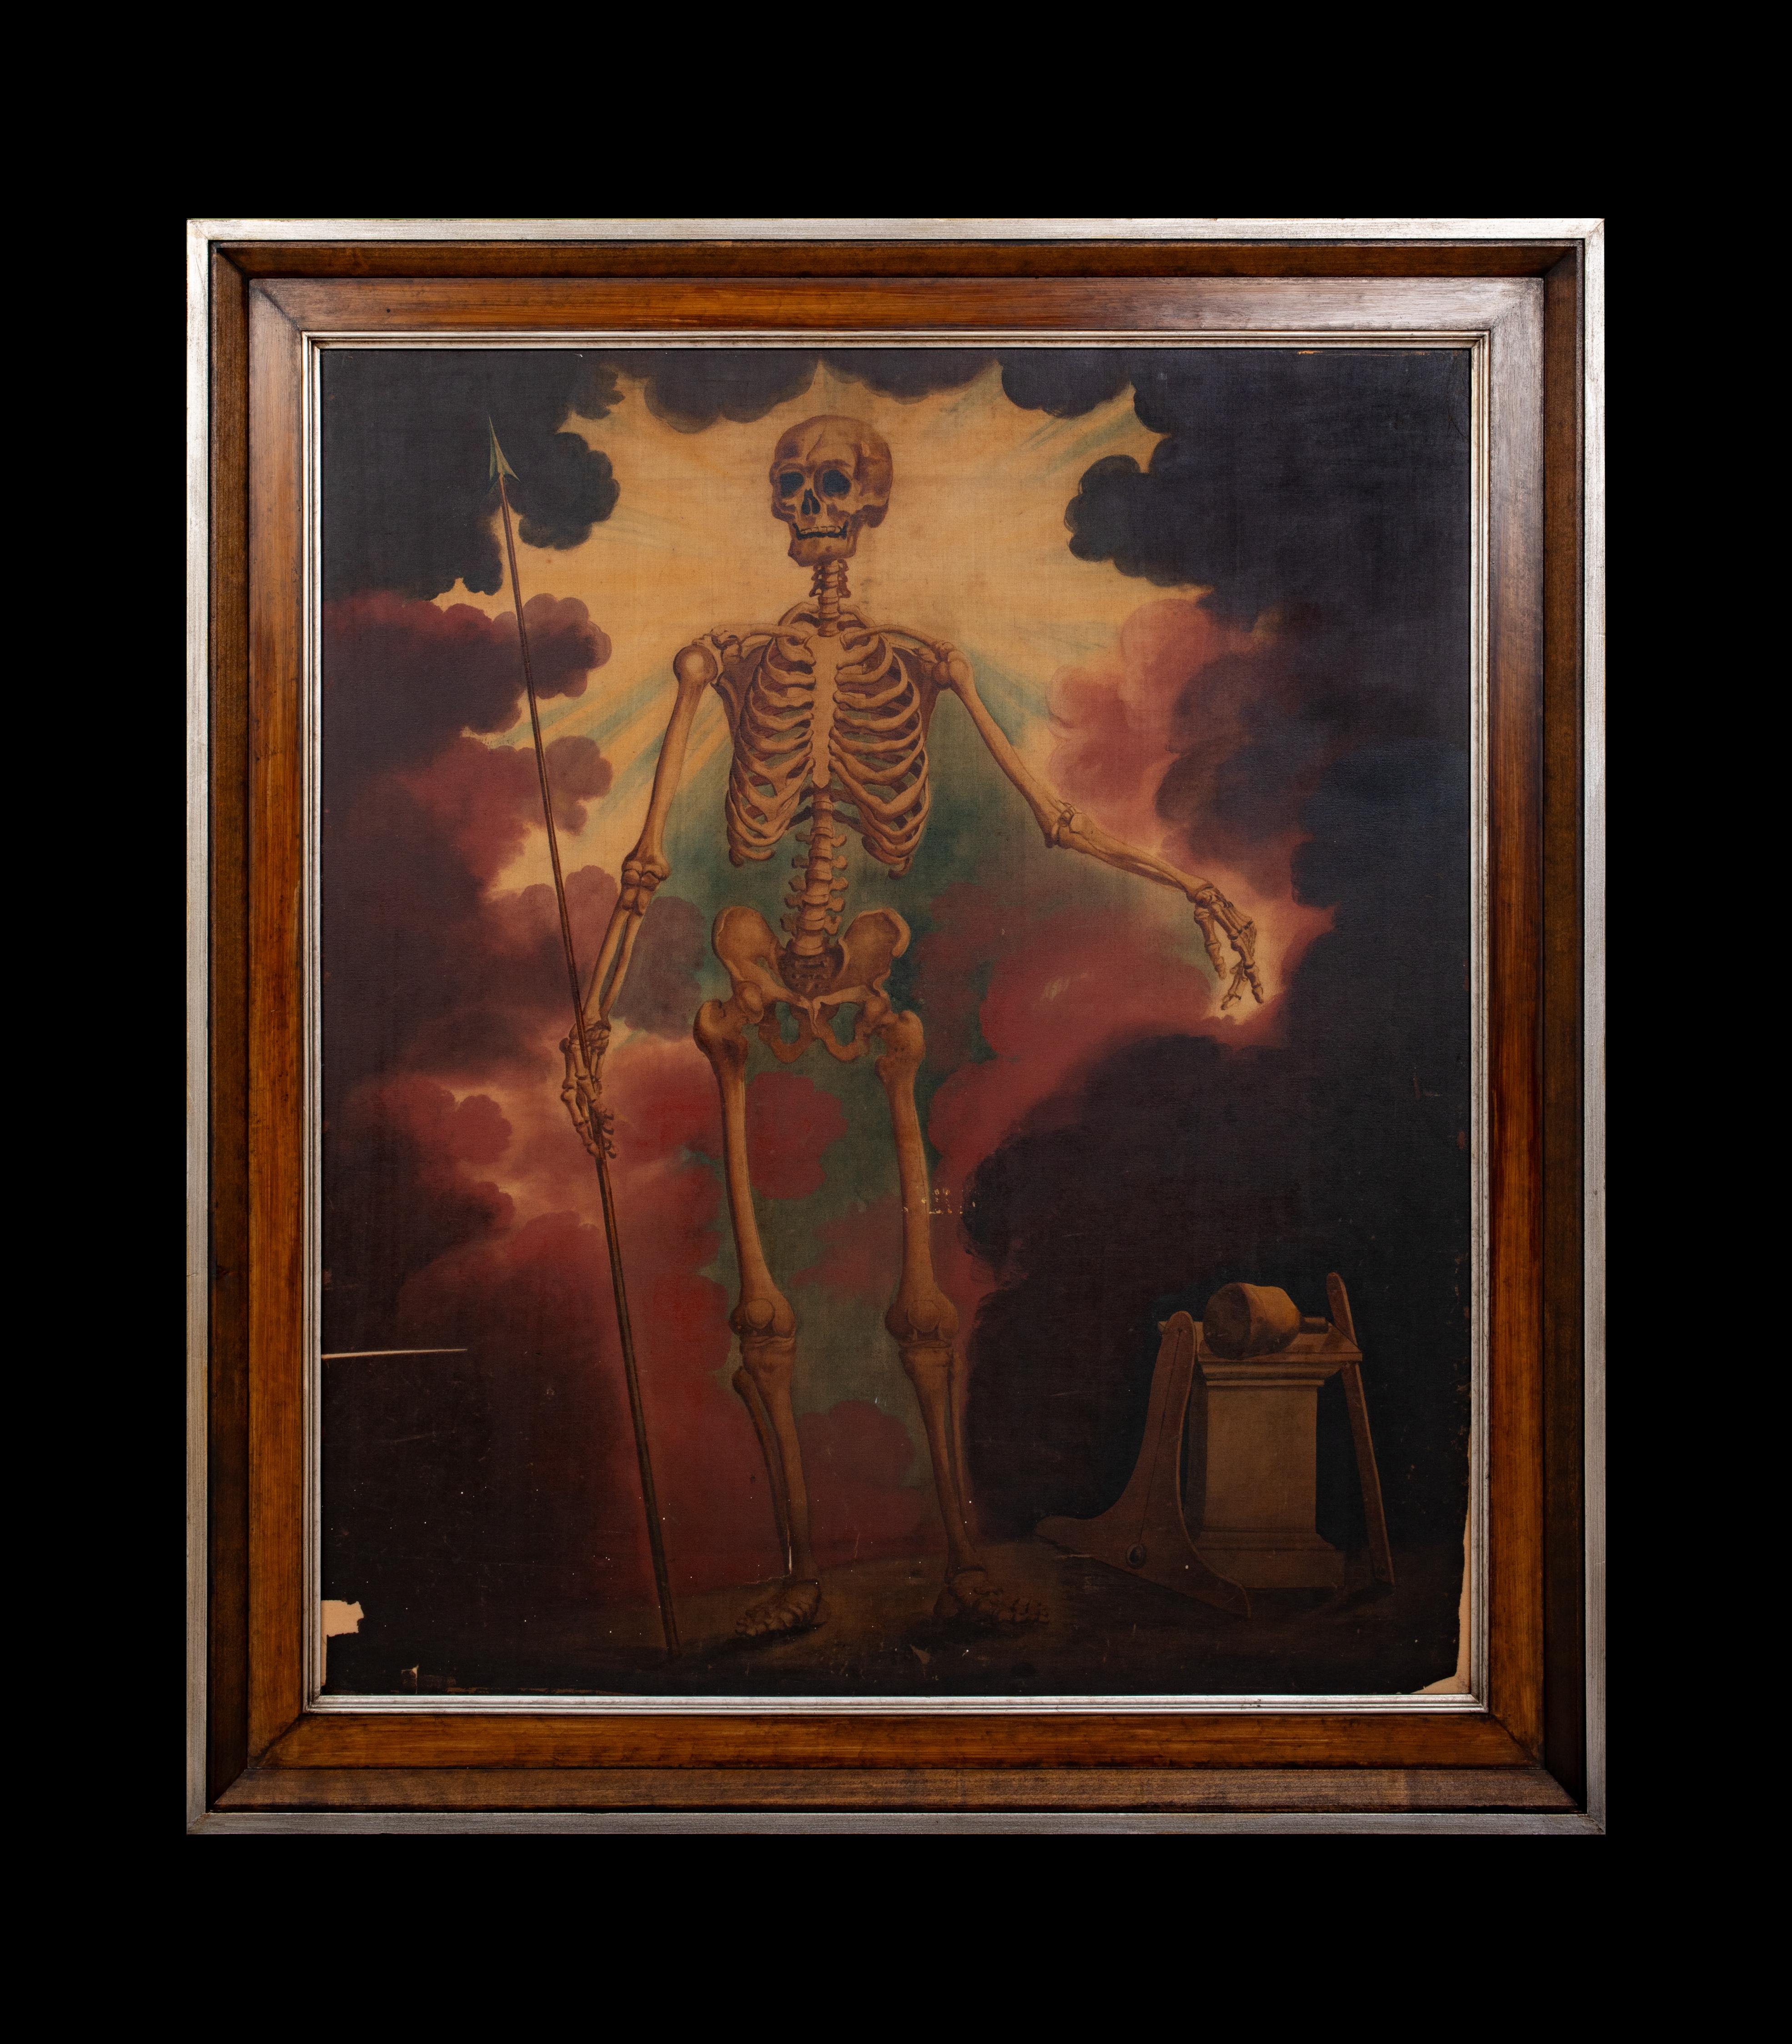 Allegorie des Todes, 19. Jahrhunderts,  Europäische Schule  – Painting von Unknown